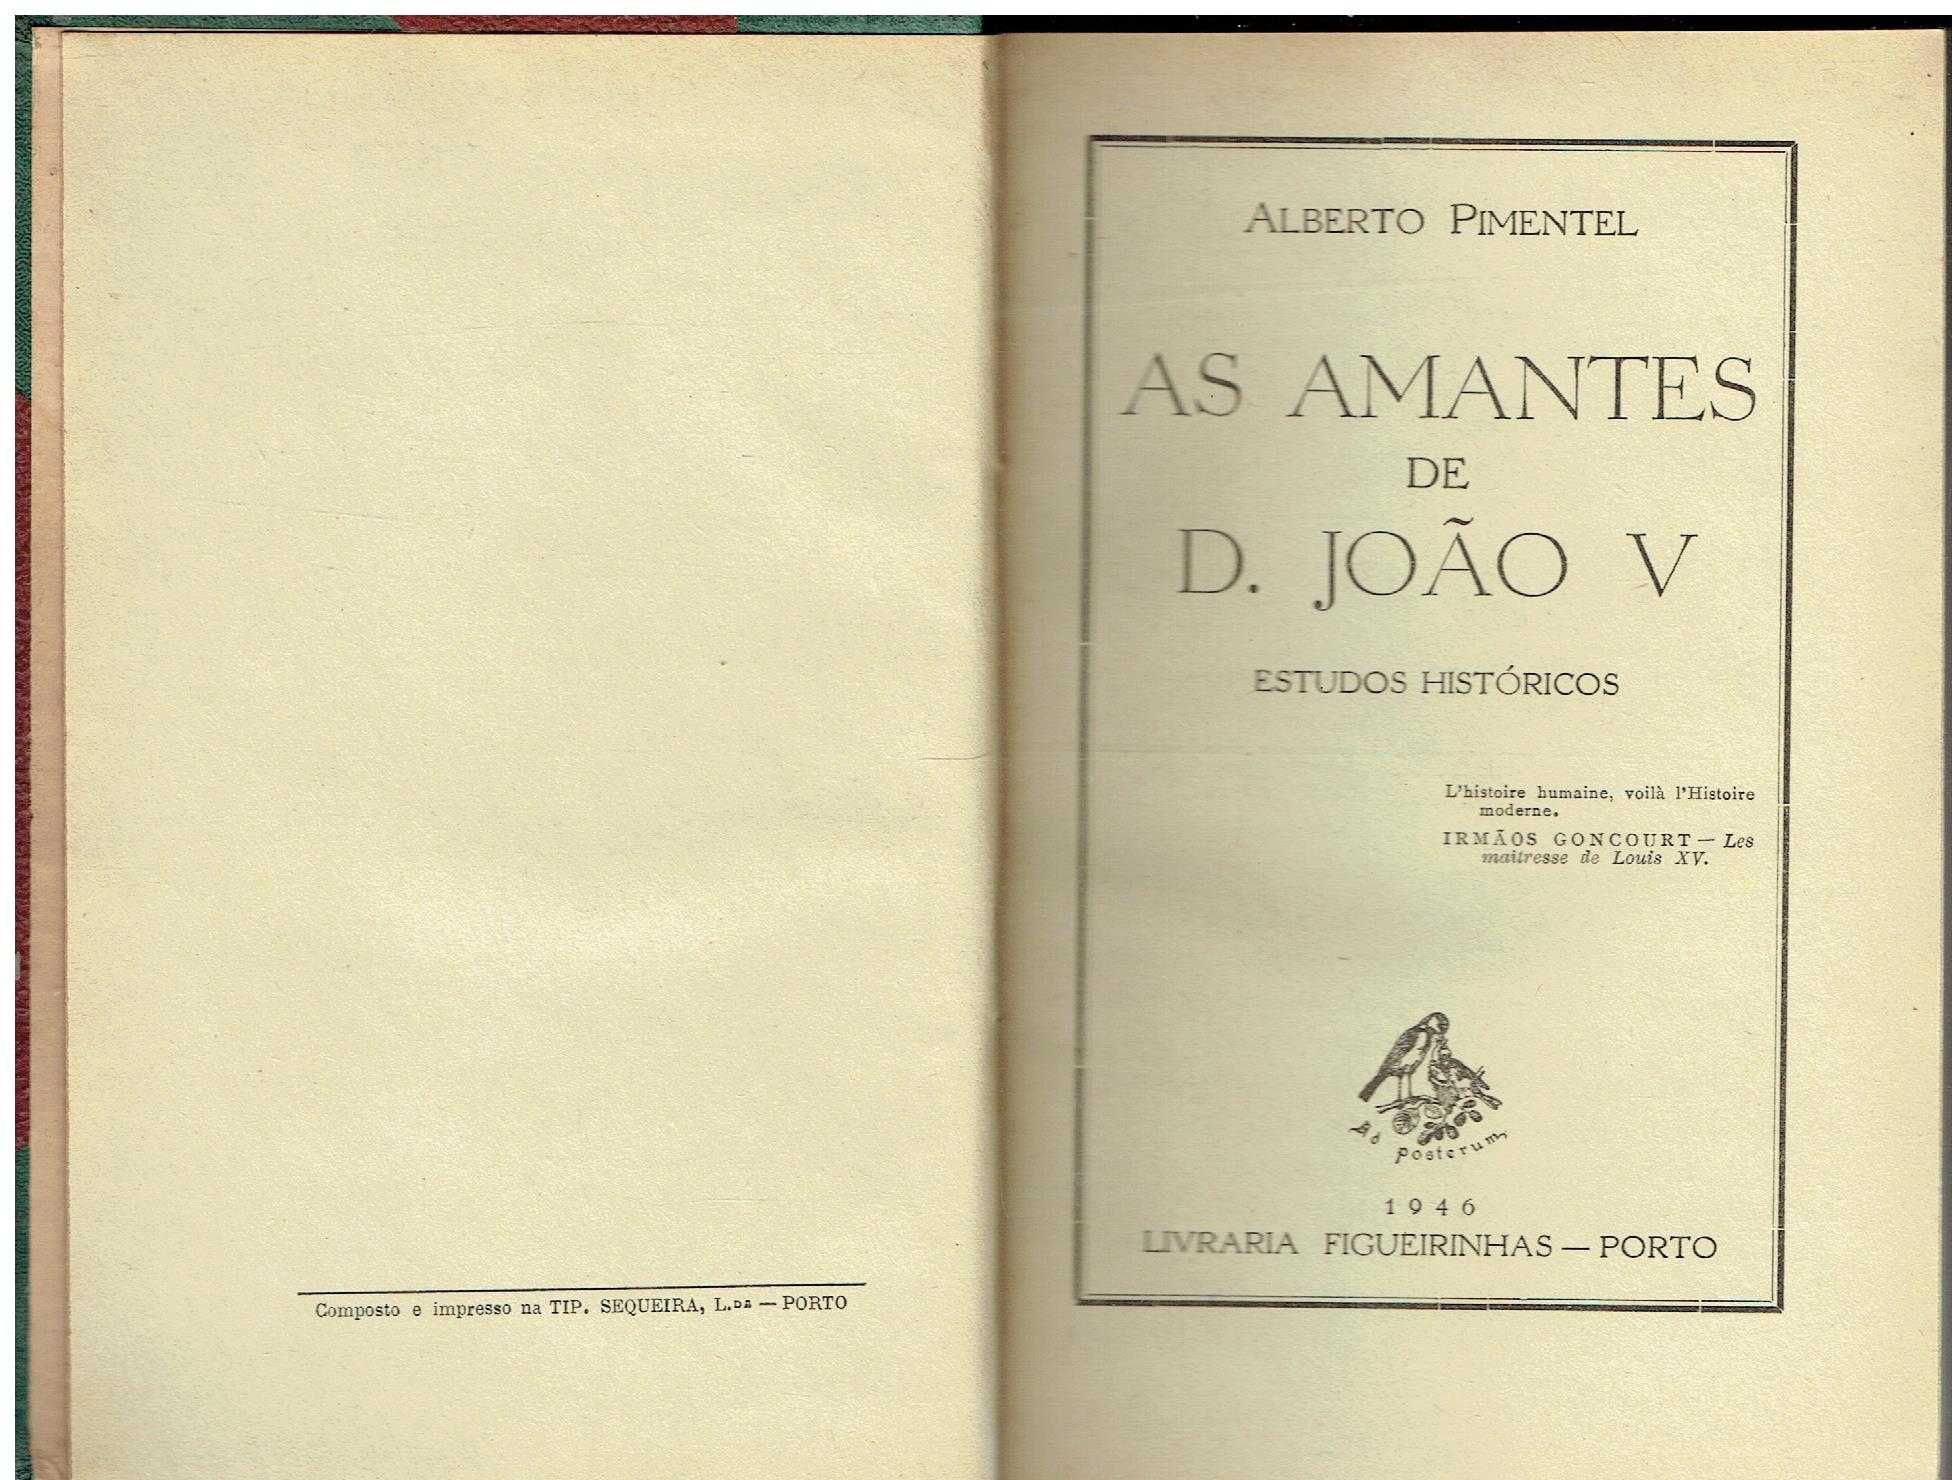 9305

Livros de Alberto Pimentel /2